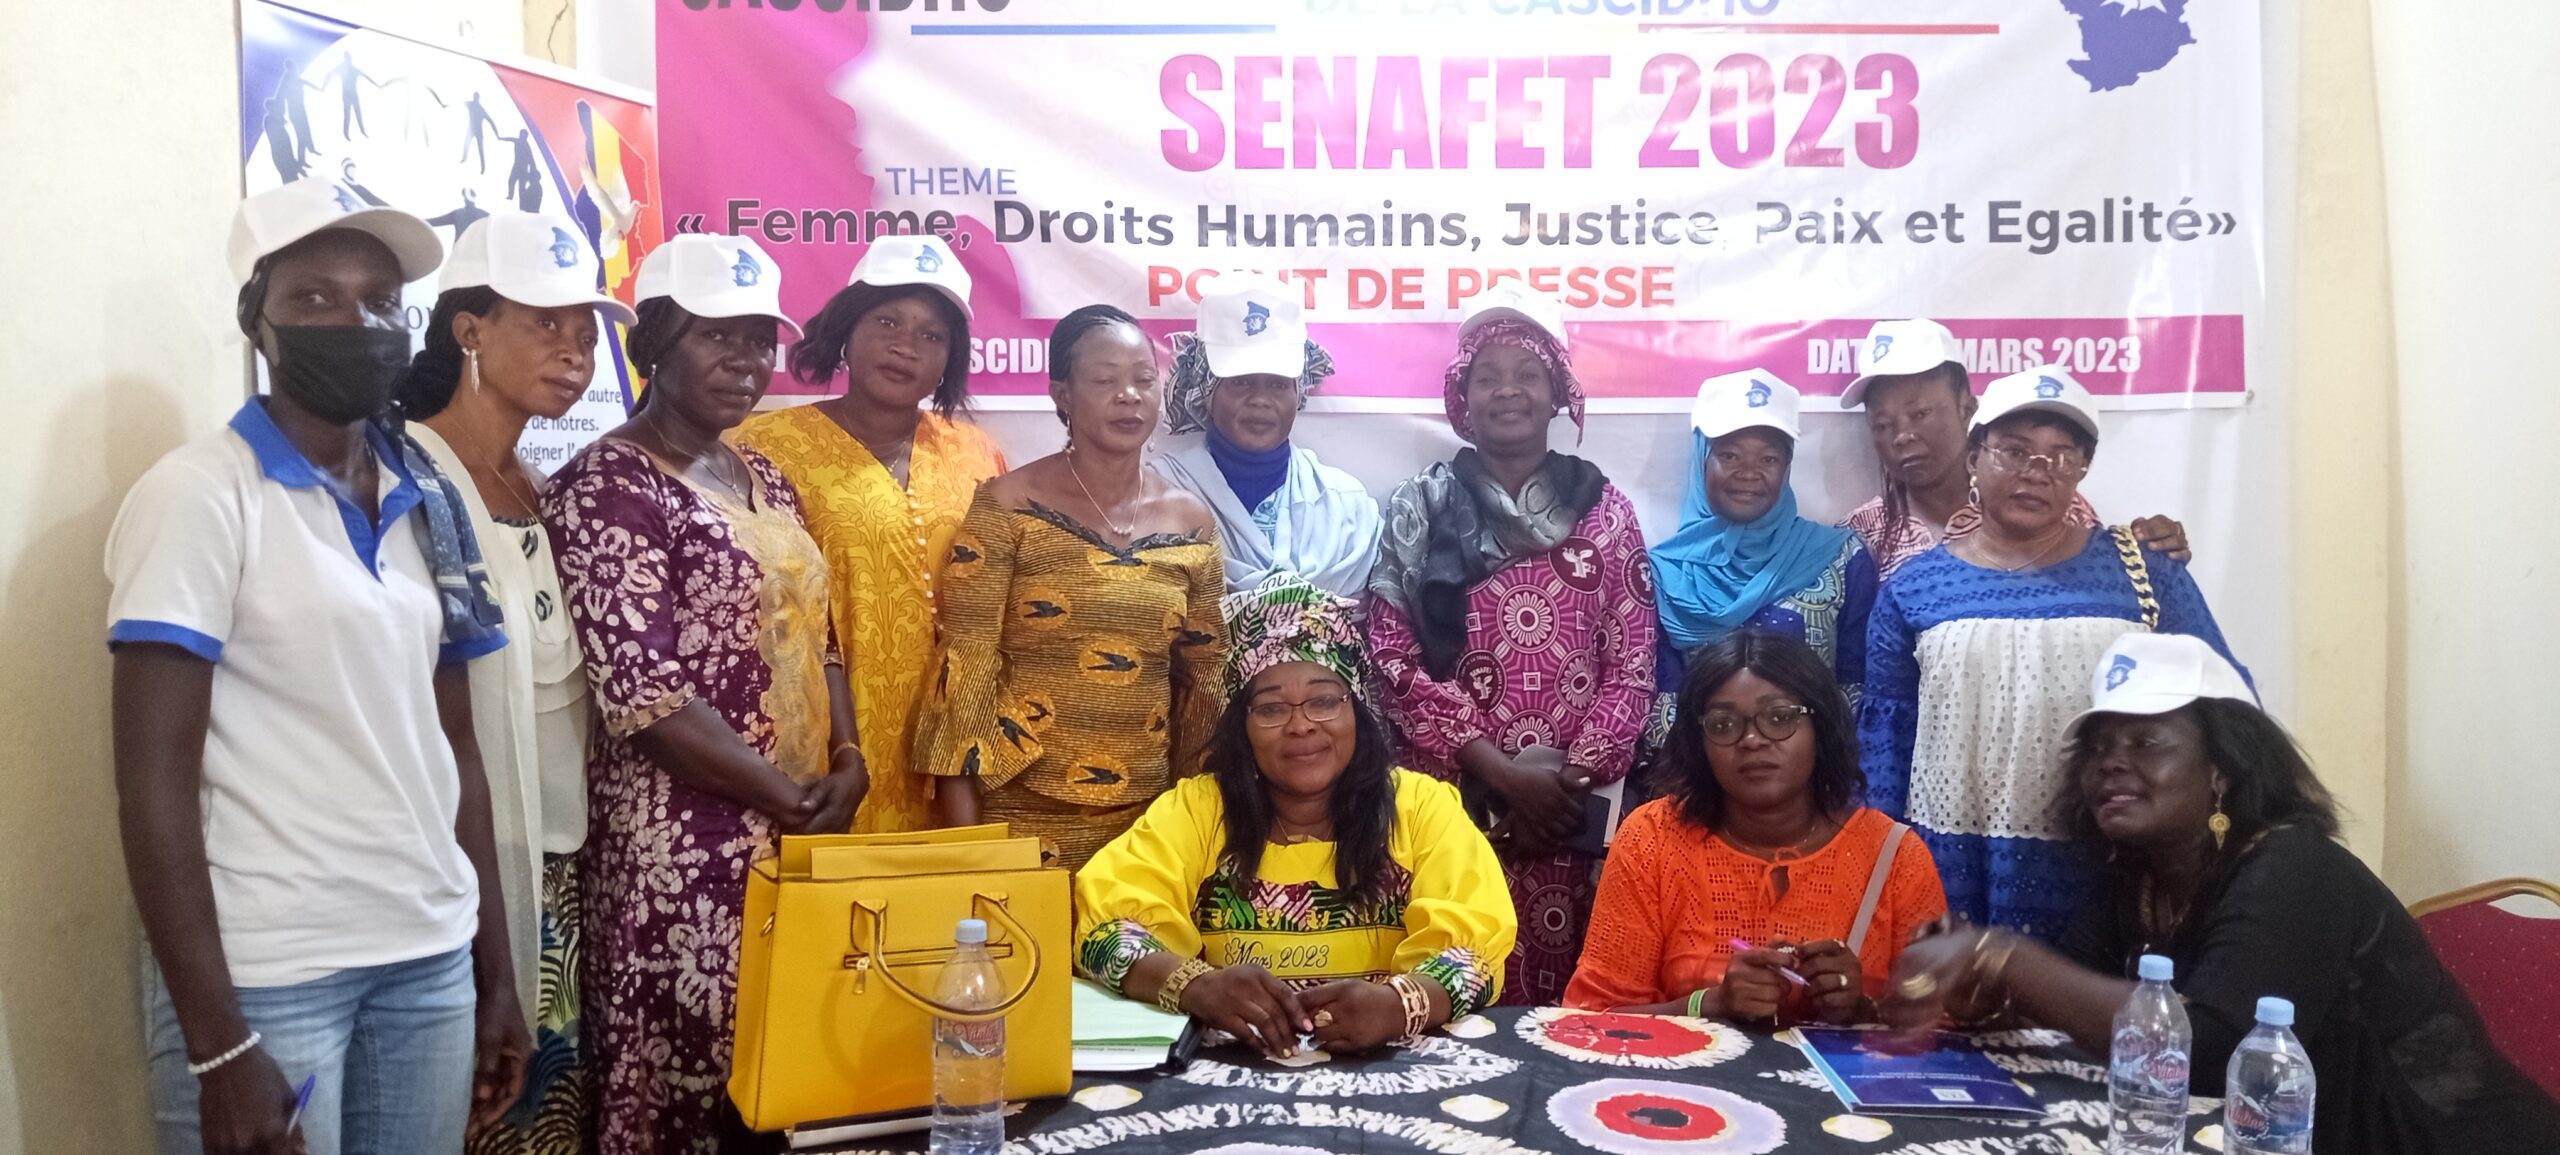 La ligue nationale des femmes de la CASCIDHO s’engage à célébrer la Senafet